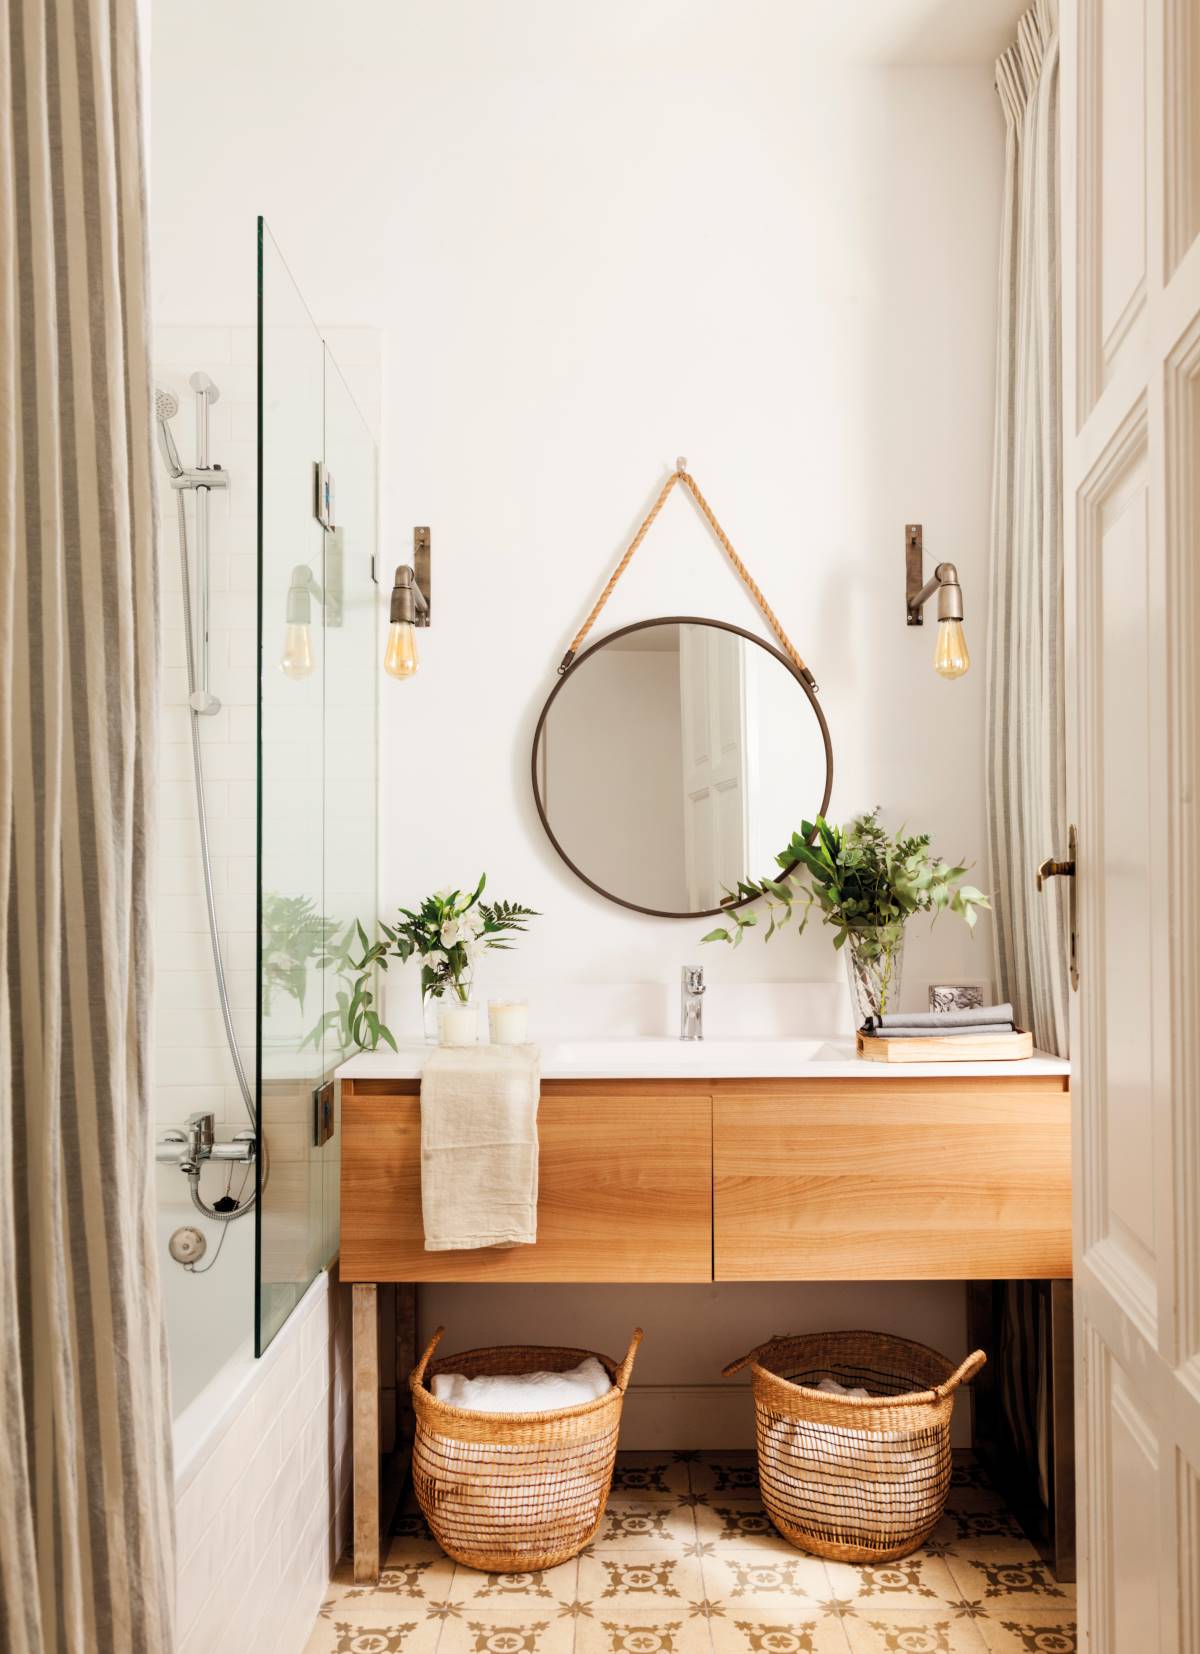 Baño pequeño moderno con mueble de madera y espejo redondo. 